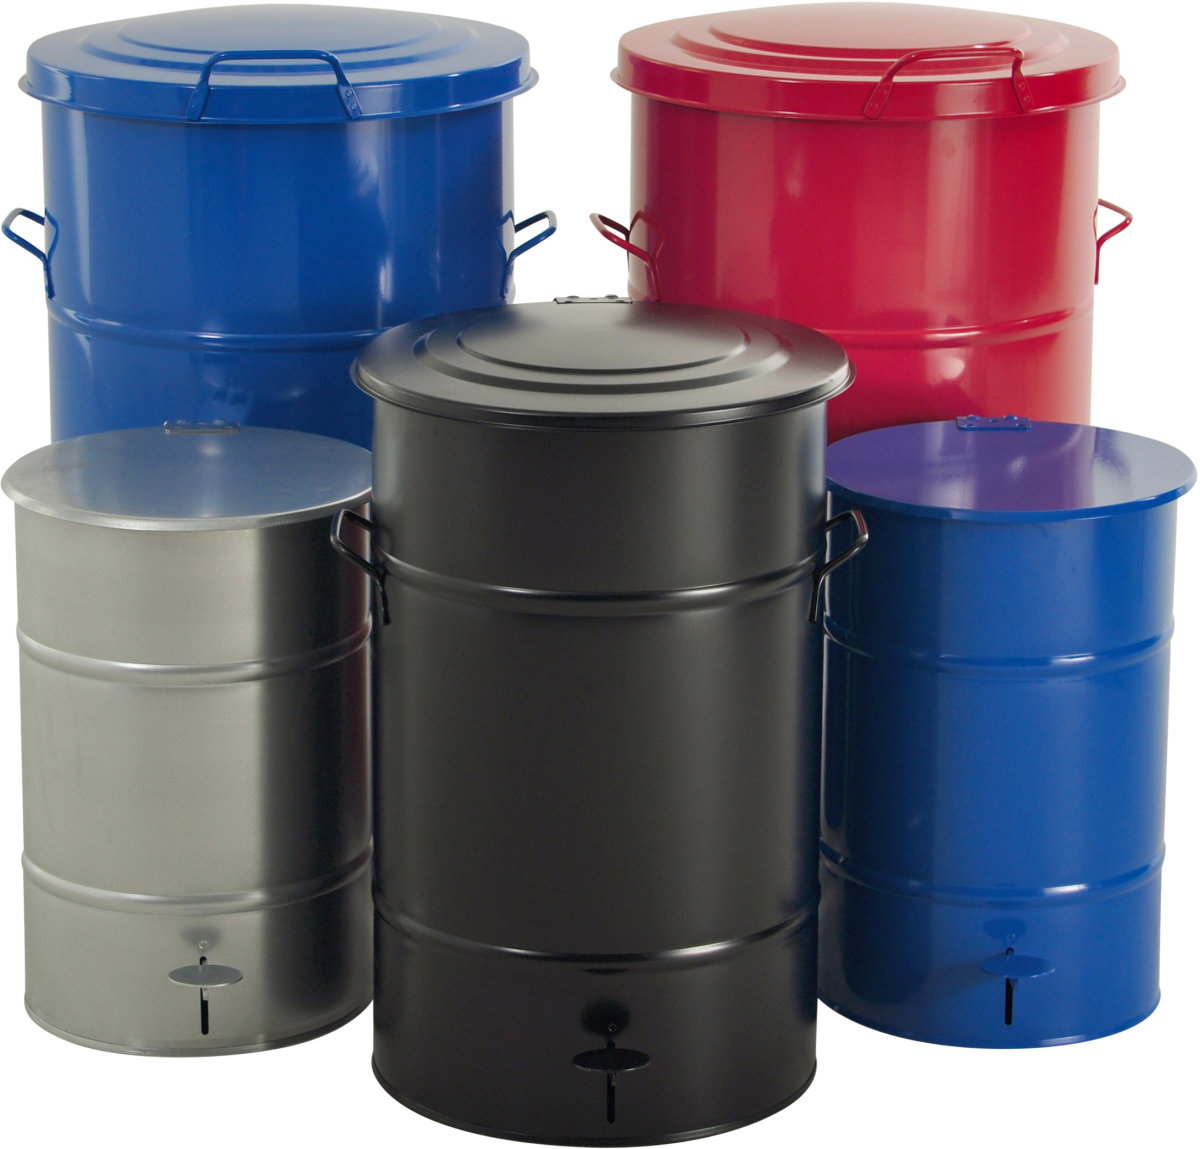 RETRO avfallsbehållare med fotpedal, 30 liter